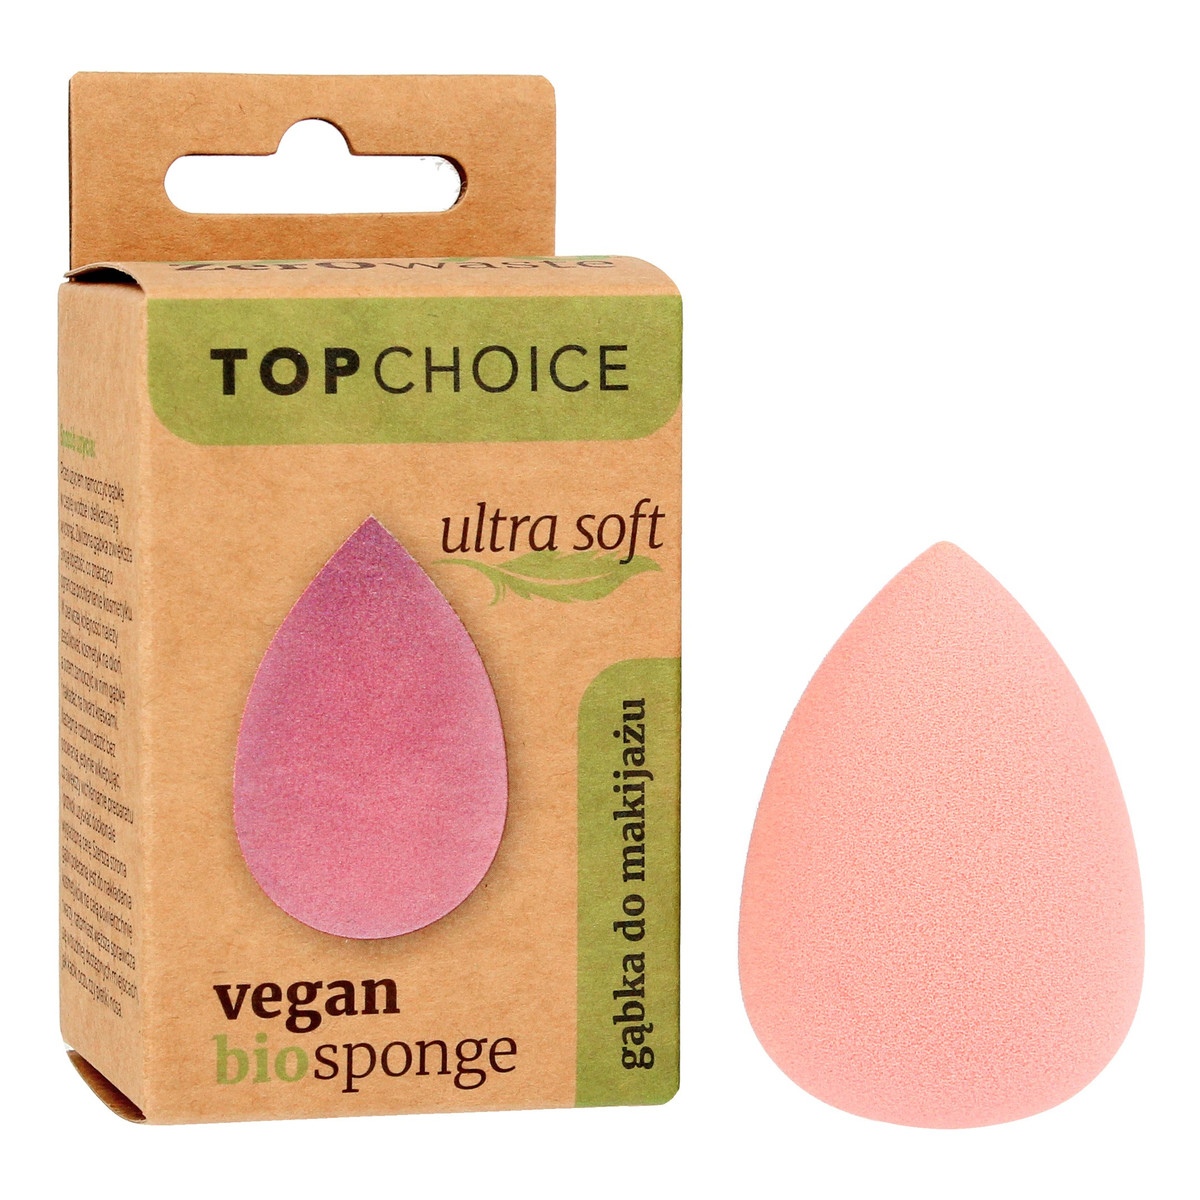 Top Choice Bio Gąbka-Blender do makijażu Ultra Soft - vegan (39454)